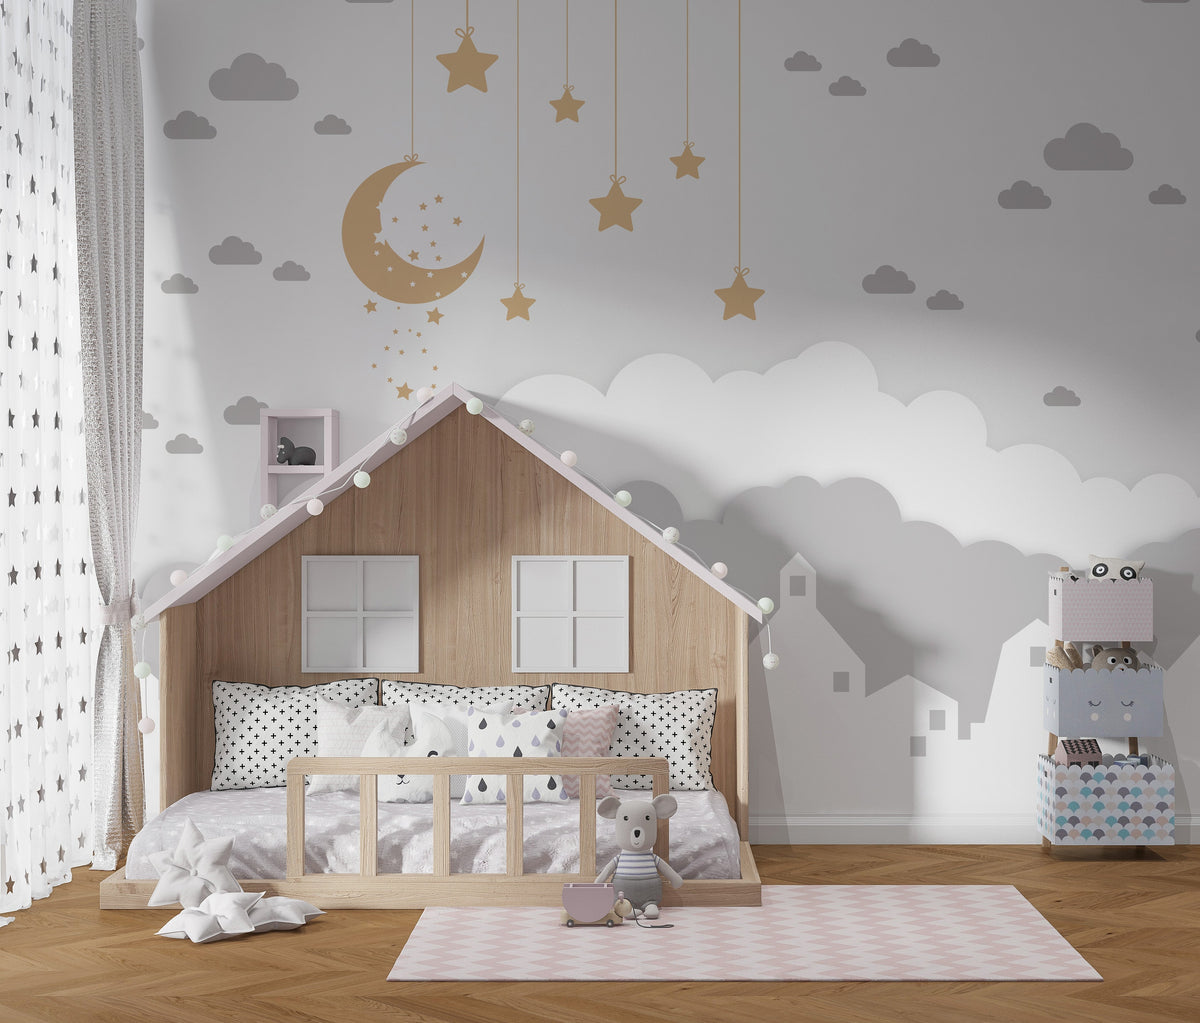 Sparkling Stars - Kids Room Wallpaper Mural-ChandeliersDecor